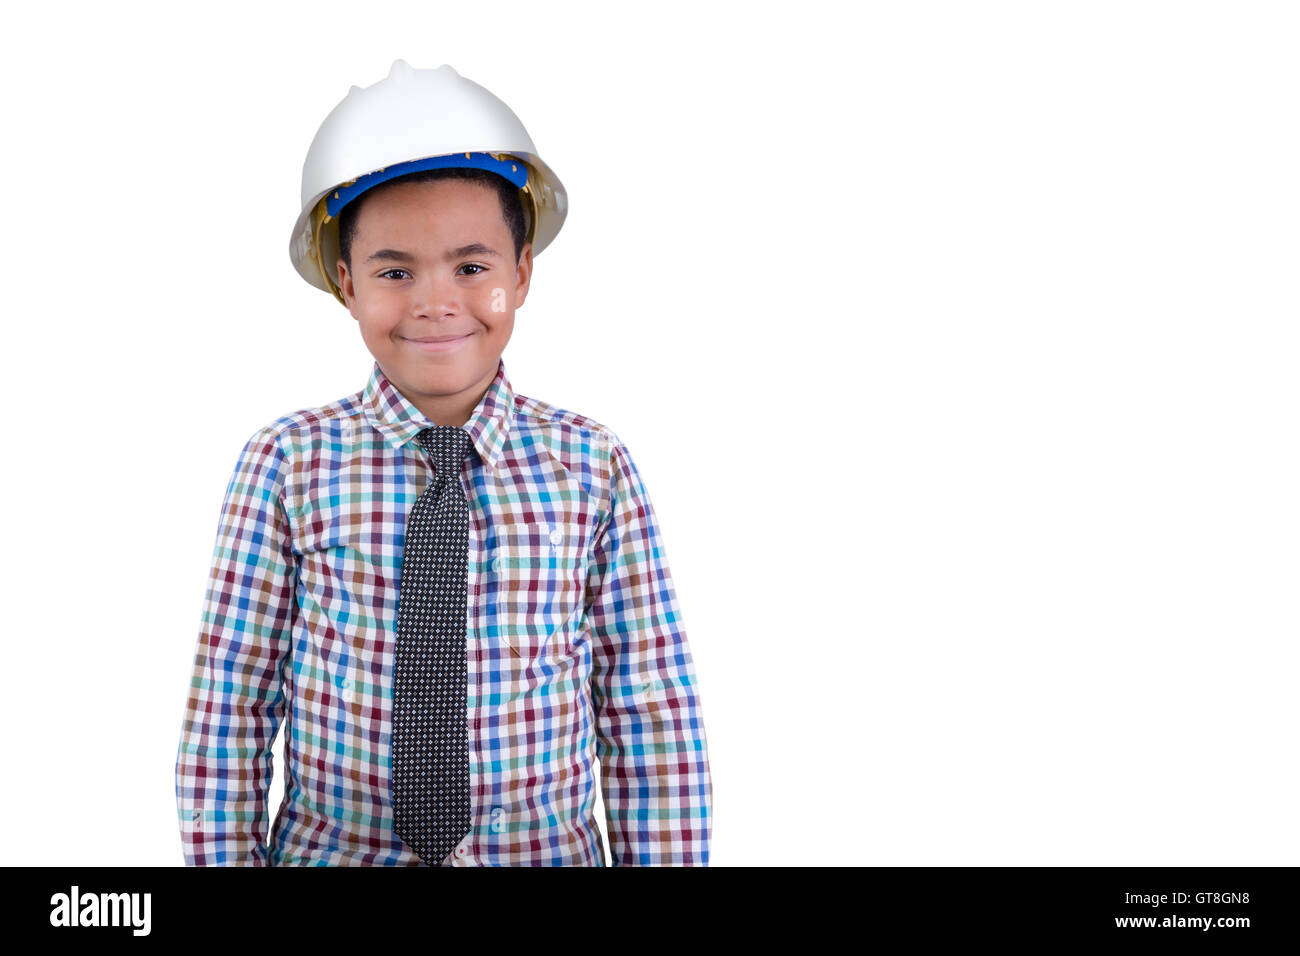 Zukünftige junger afrikanischer Amerikaner Ingenieur mit einem Porträt eines charismatischen jungen Tween jungen in einem Helm und Krawatte stehen grinni Stockfoto